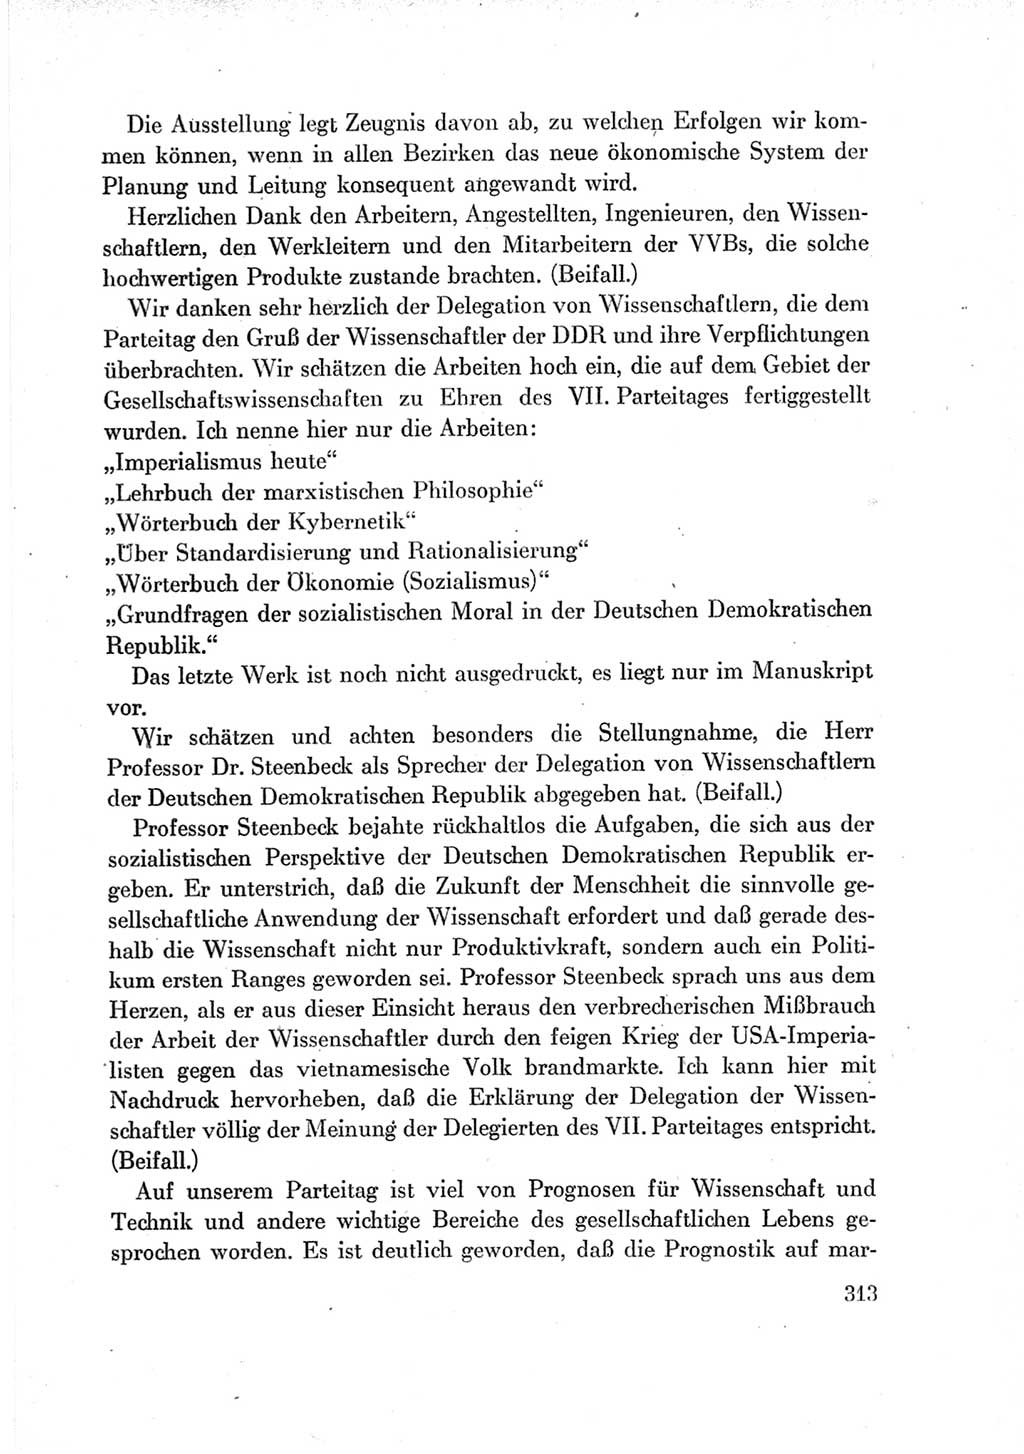 Protokoll der Verhandlungen des Ⅶ. Parteitages der Sozialistischen Einheitspartei Deutschlands (SED) [Deutsche Demokratische Republik (DDR)] 1967, Band Ⅱ, Seite 313 (Prot. Verh. Ⅶ. PT SED DDR 1967, Bd. Ⅱ, S. 313)